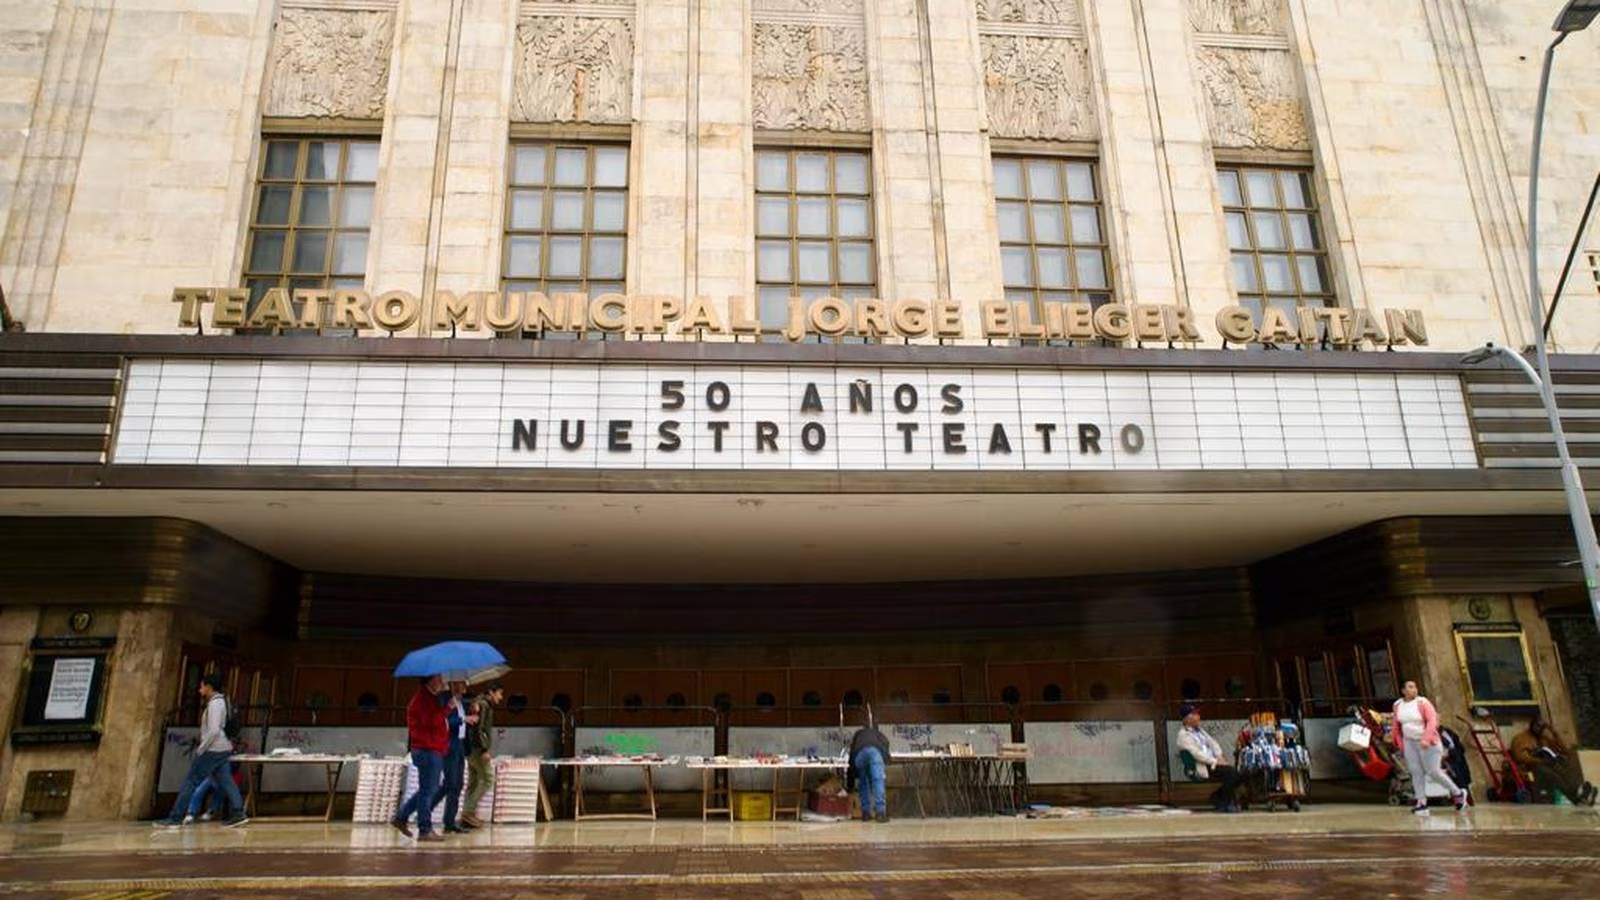 Imagen noticia El Teatro Jorge Eliécer Gaitán celebrará 50 años con actividades especiales